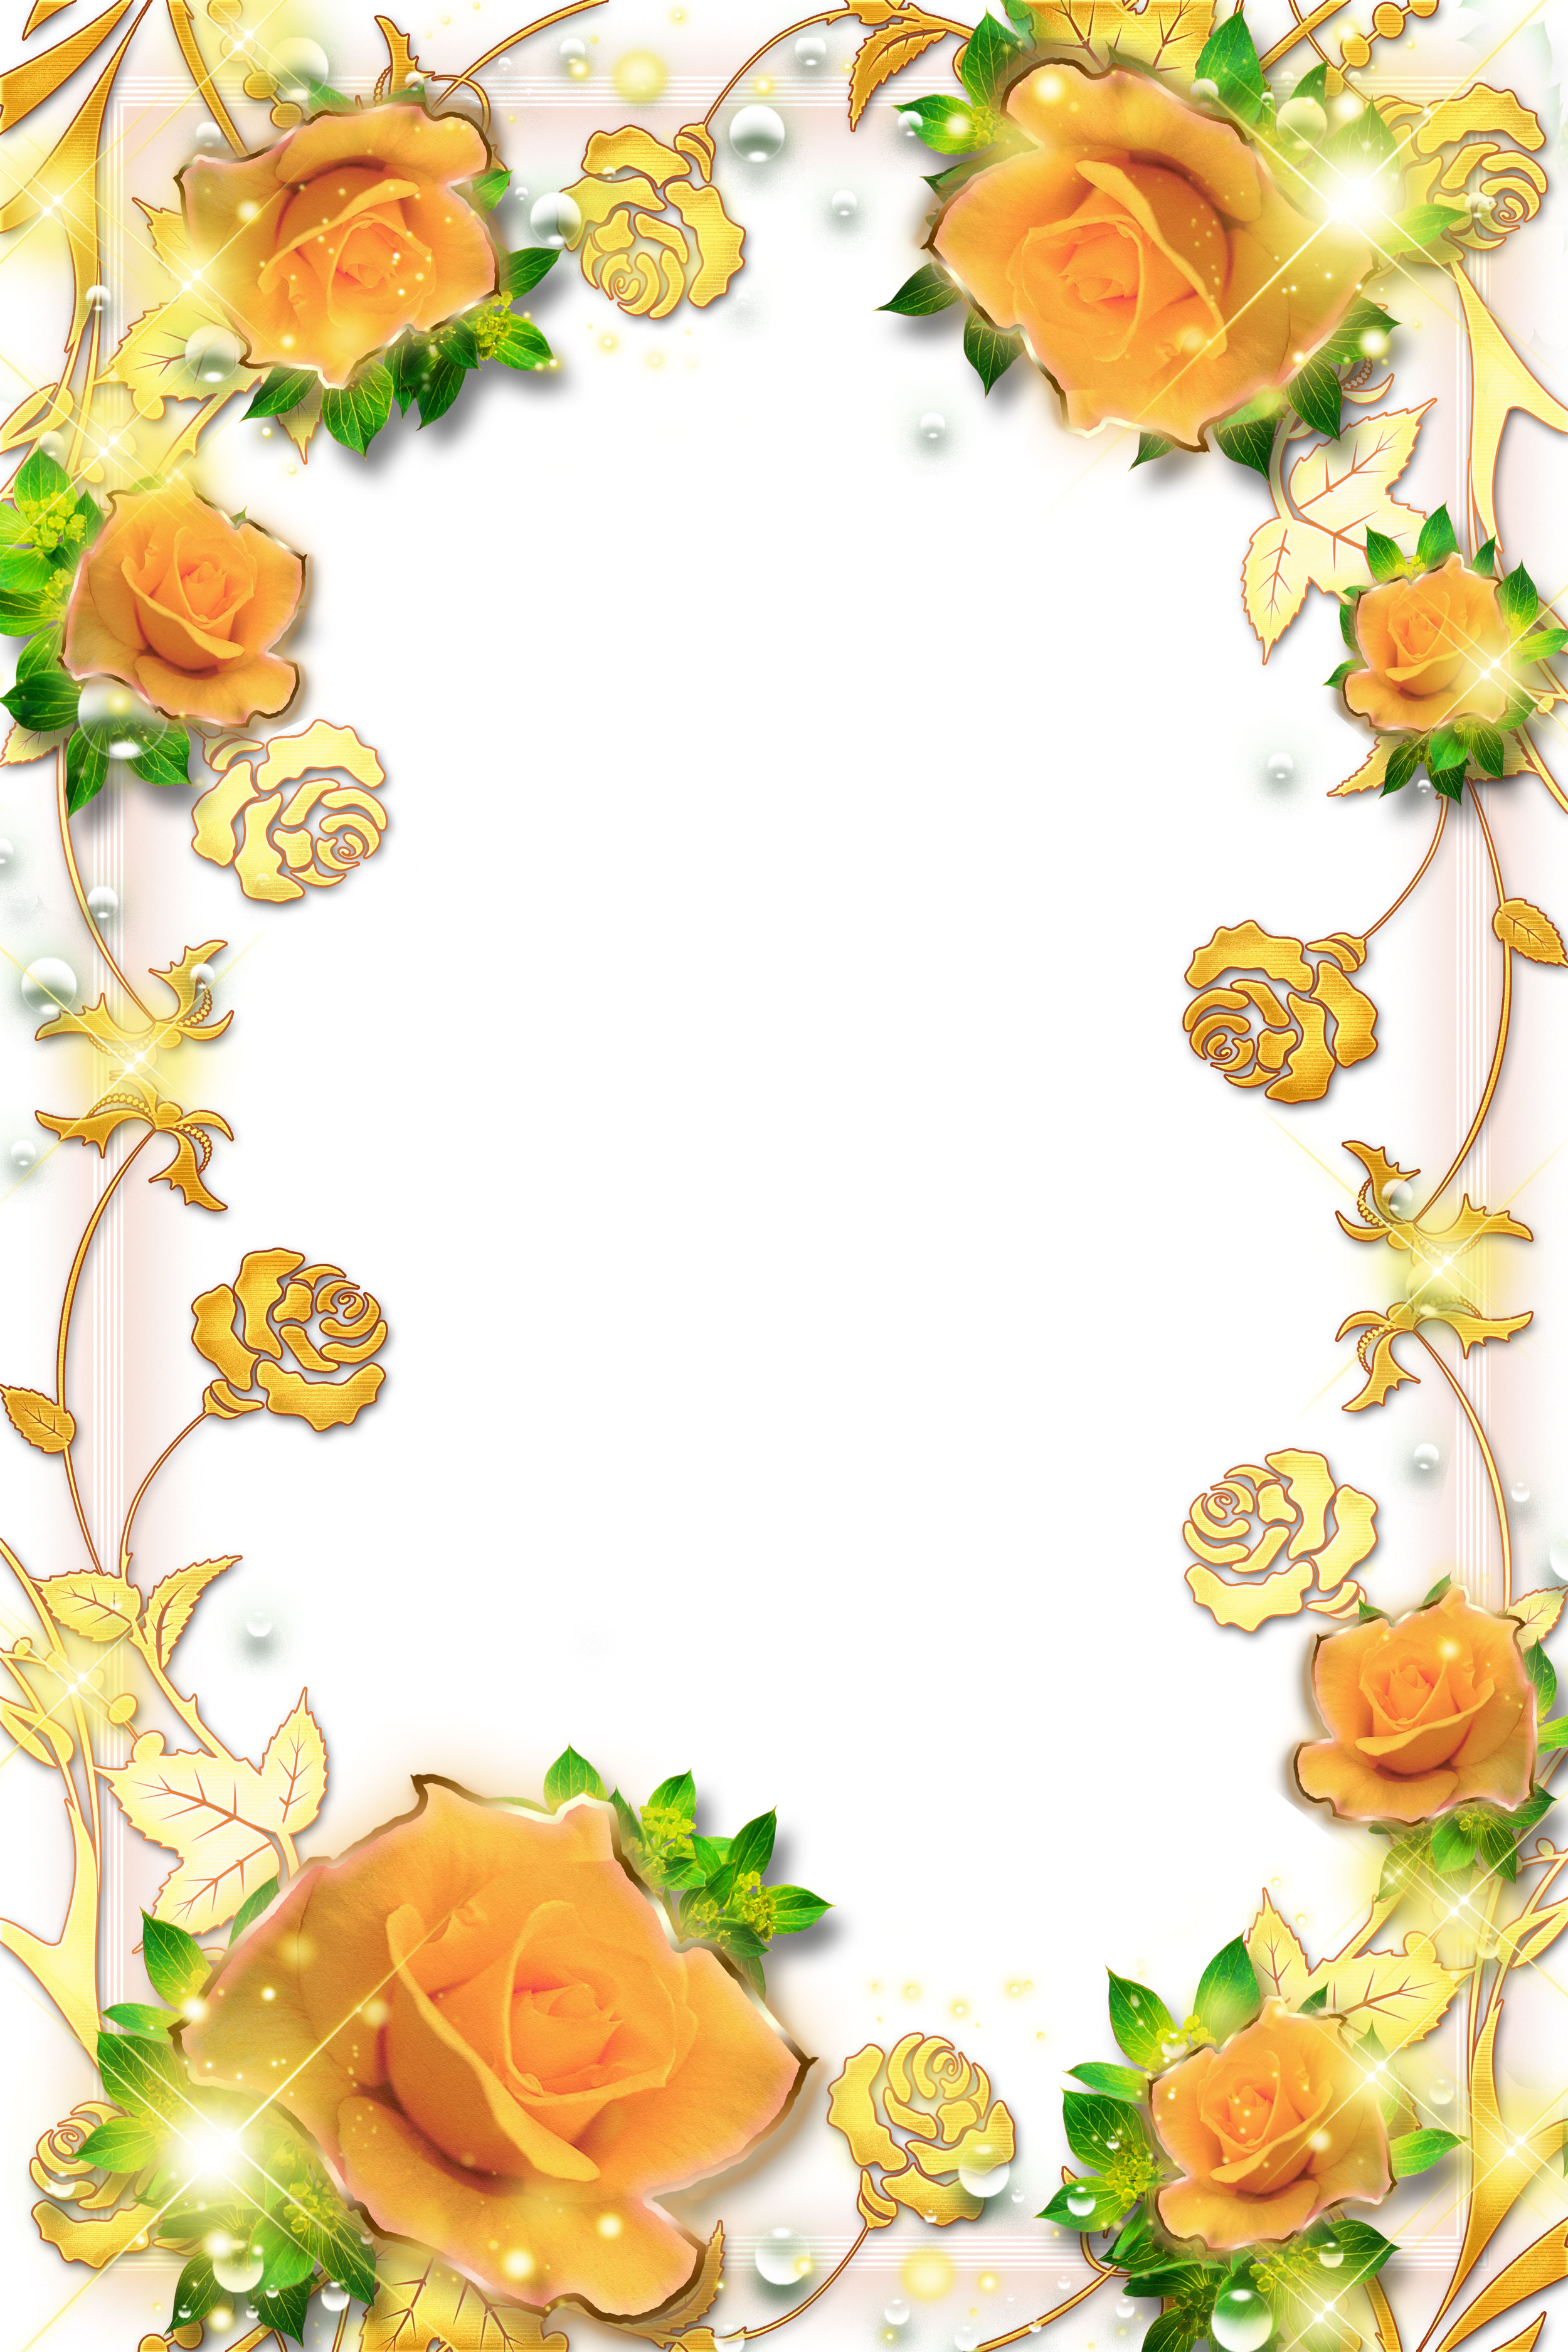 バラの画像 イラスト 壁紙 背景用 No 624 オレンジのバラ 金色